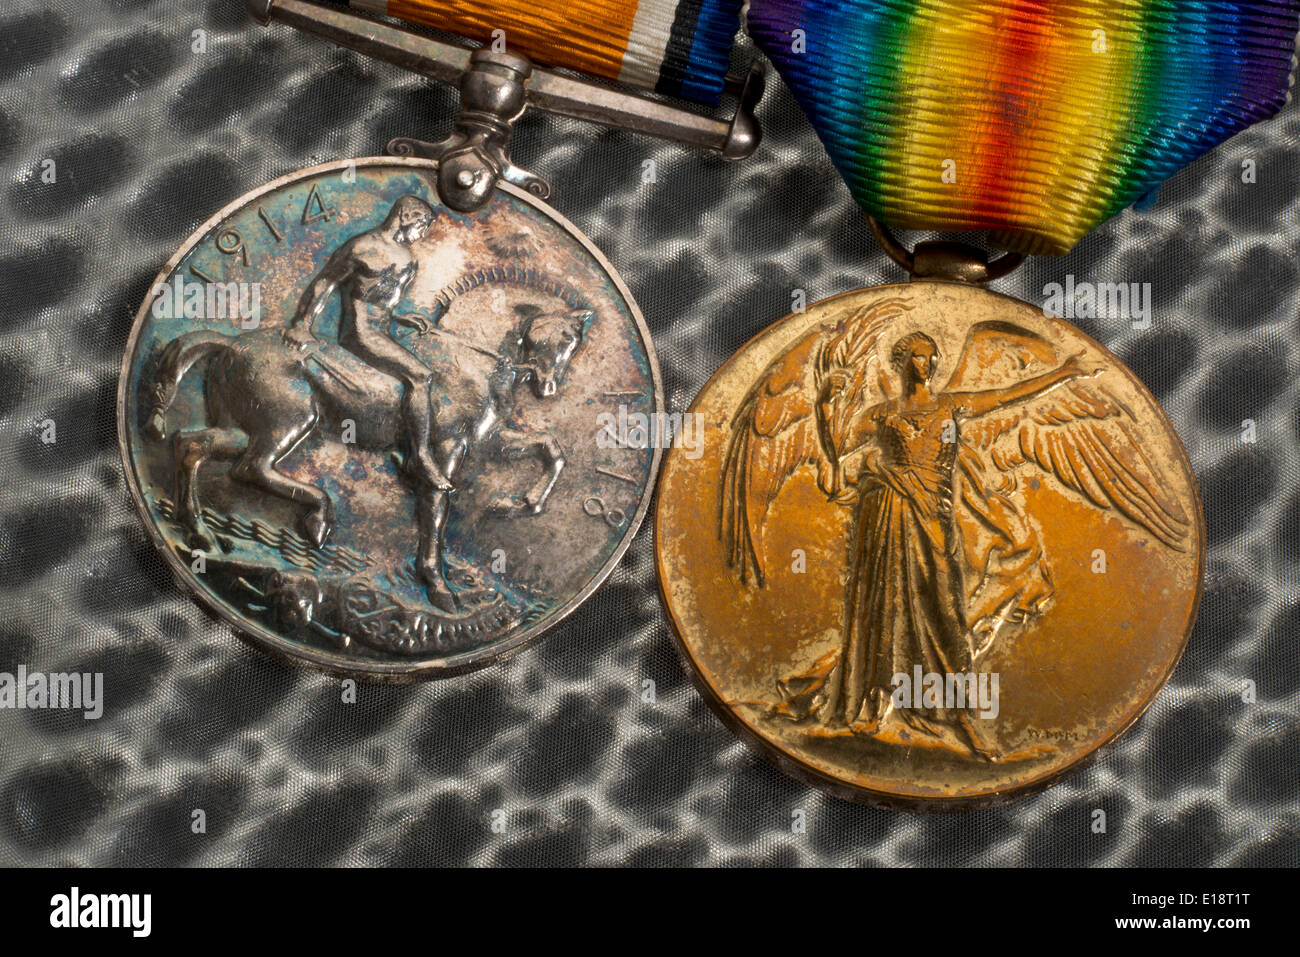 Ersten Weltkrieg Medaillen. Britischen Krieg-Medaille und der Sieg-Medaille. Stockfoto